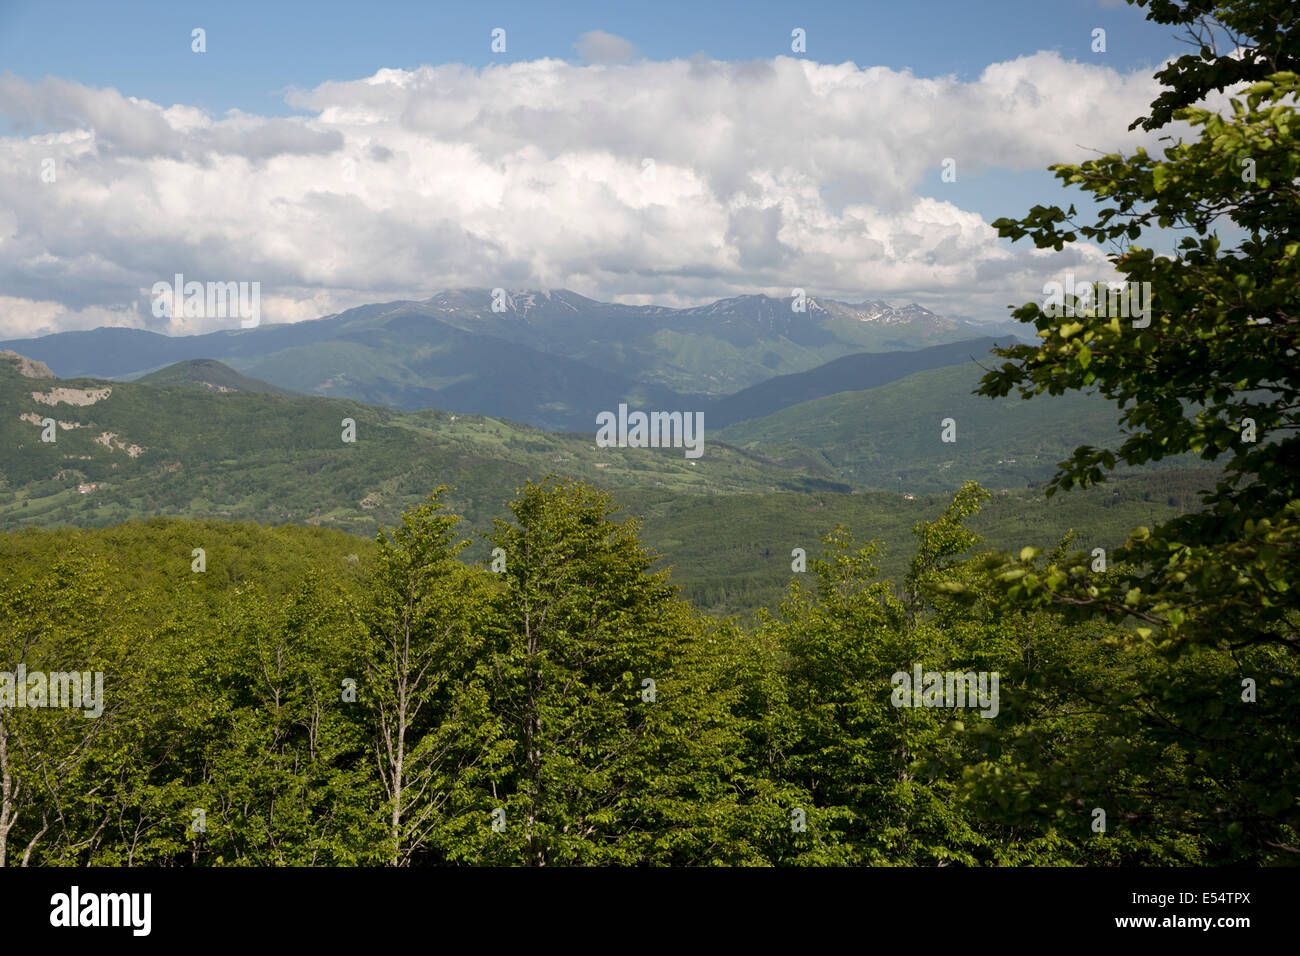 Vista del Orecchiella mountain range dal vertice del Passo della Radici, vicino a San Pellegrino in Alpe, della Garfagnana, Emilia Romagna, Italia, Europa Foto Stock